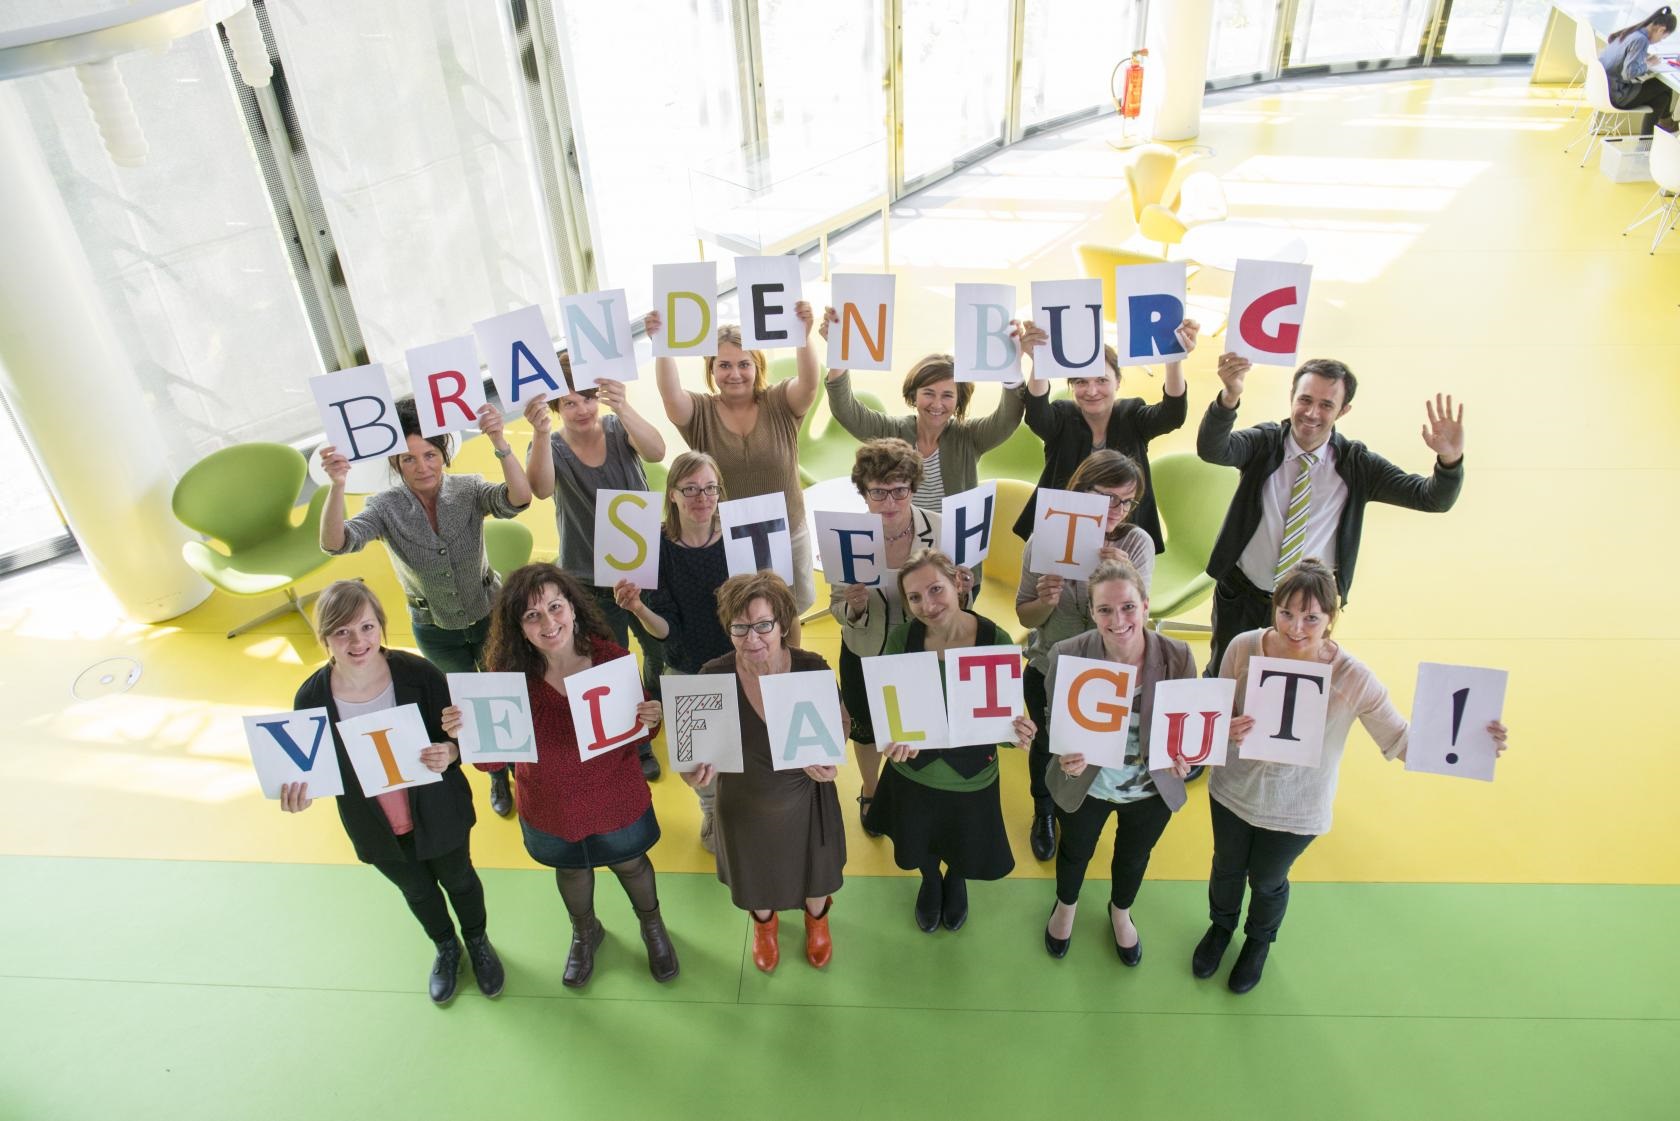 Foto zum Diversity Tag 2015 Beteiligte im Landesnetzwerk IQ (Integration durch Qualifzierung) halten den Textzug Brandenburg tut Vielfalt gut hoch.